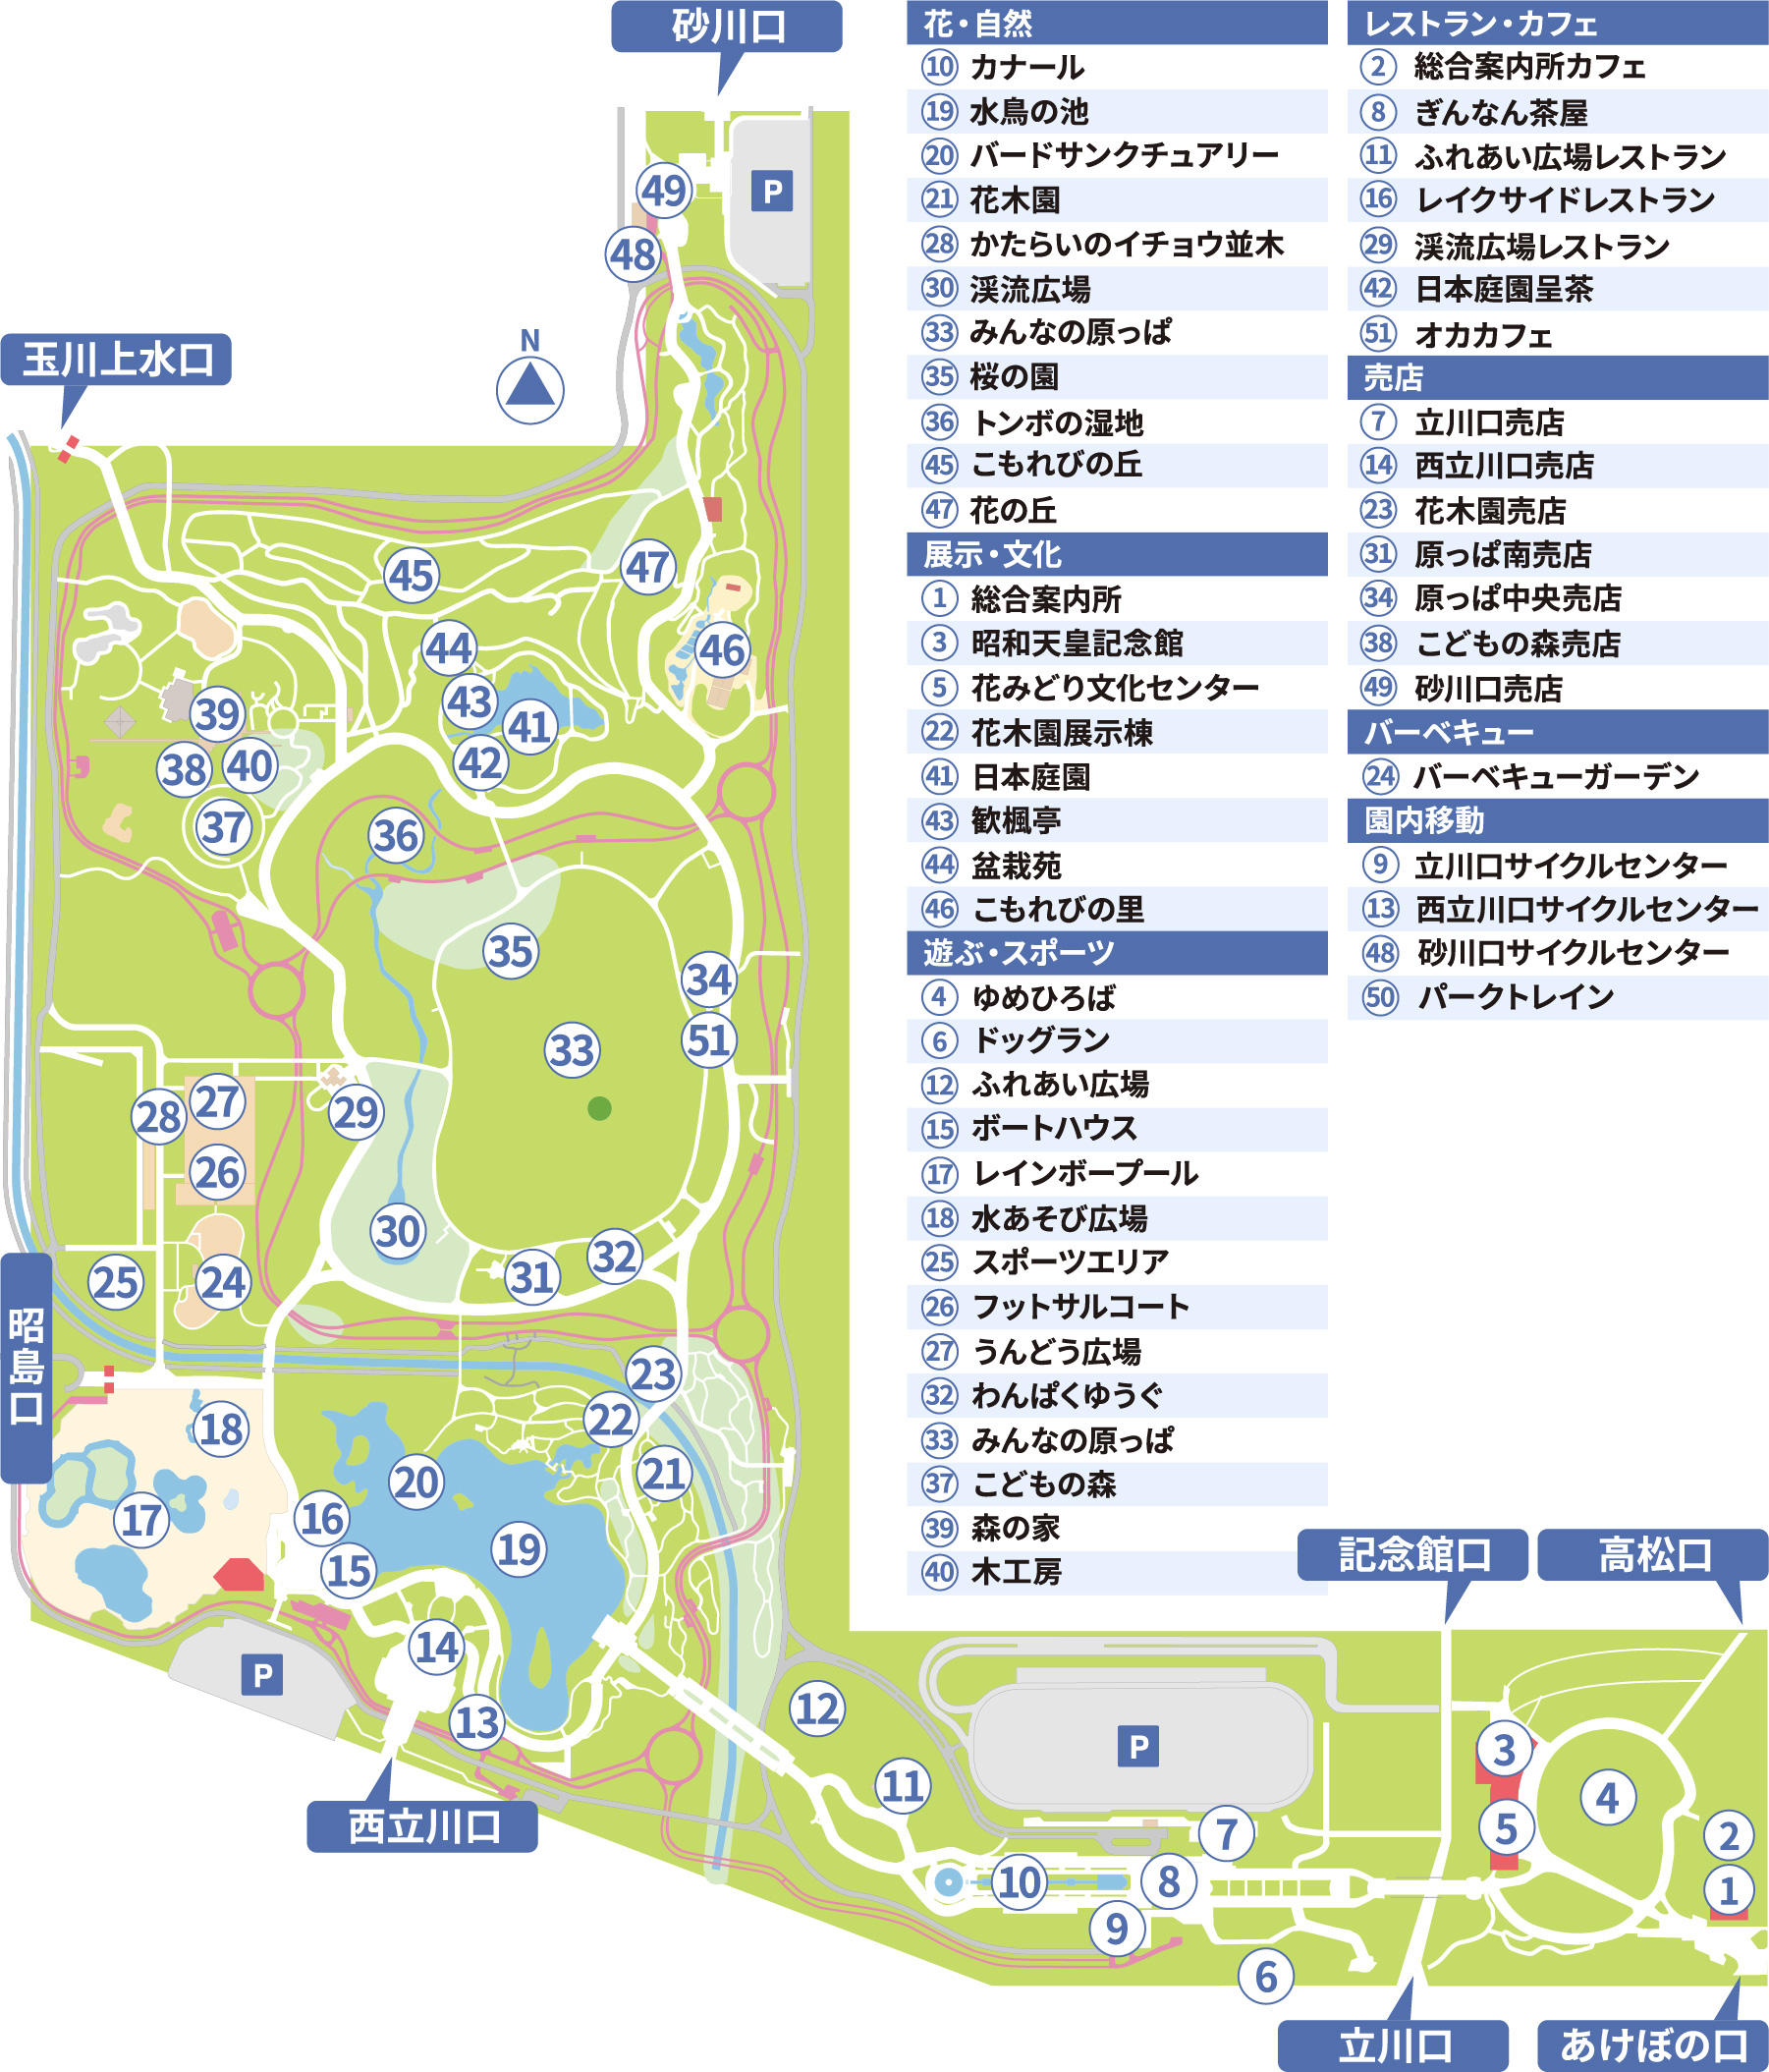 昭和記念公園全体マップ